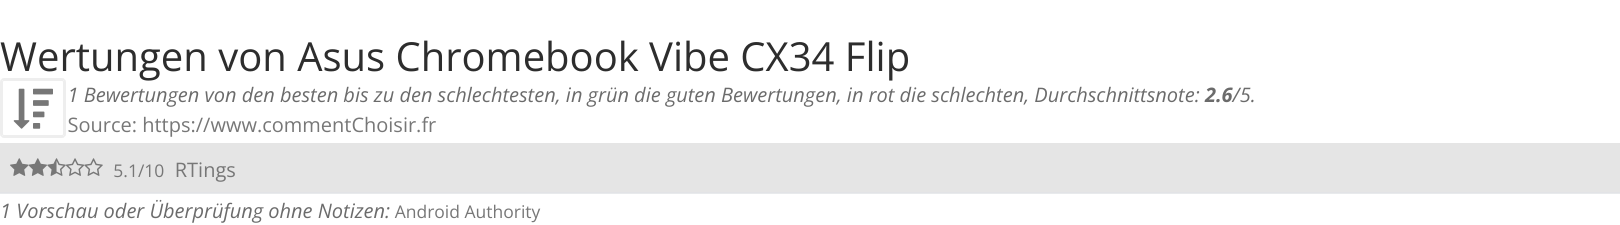 Ratings Asus Chromebook Vibe CX34 Flip